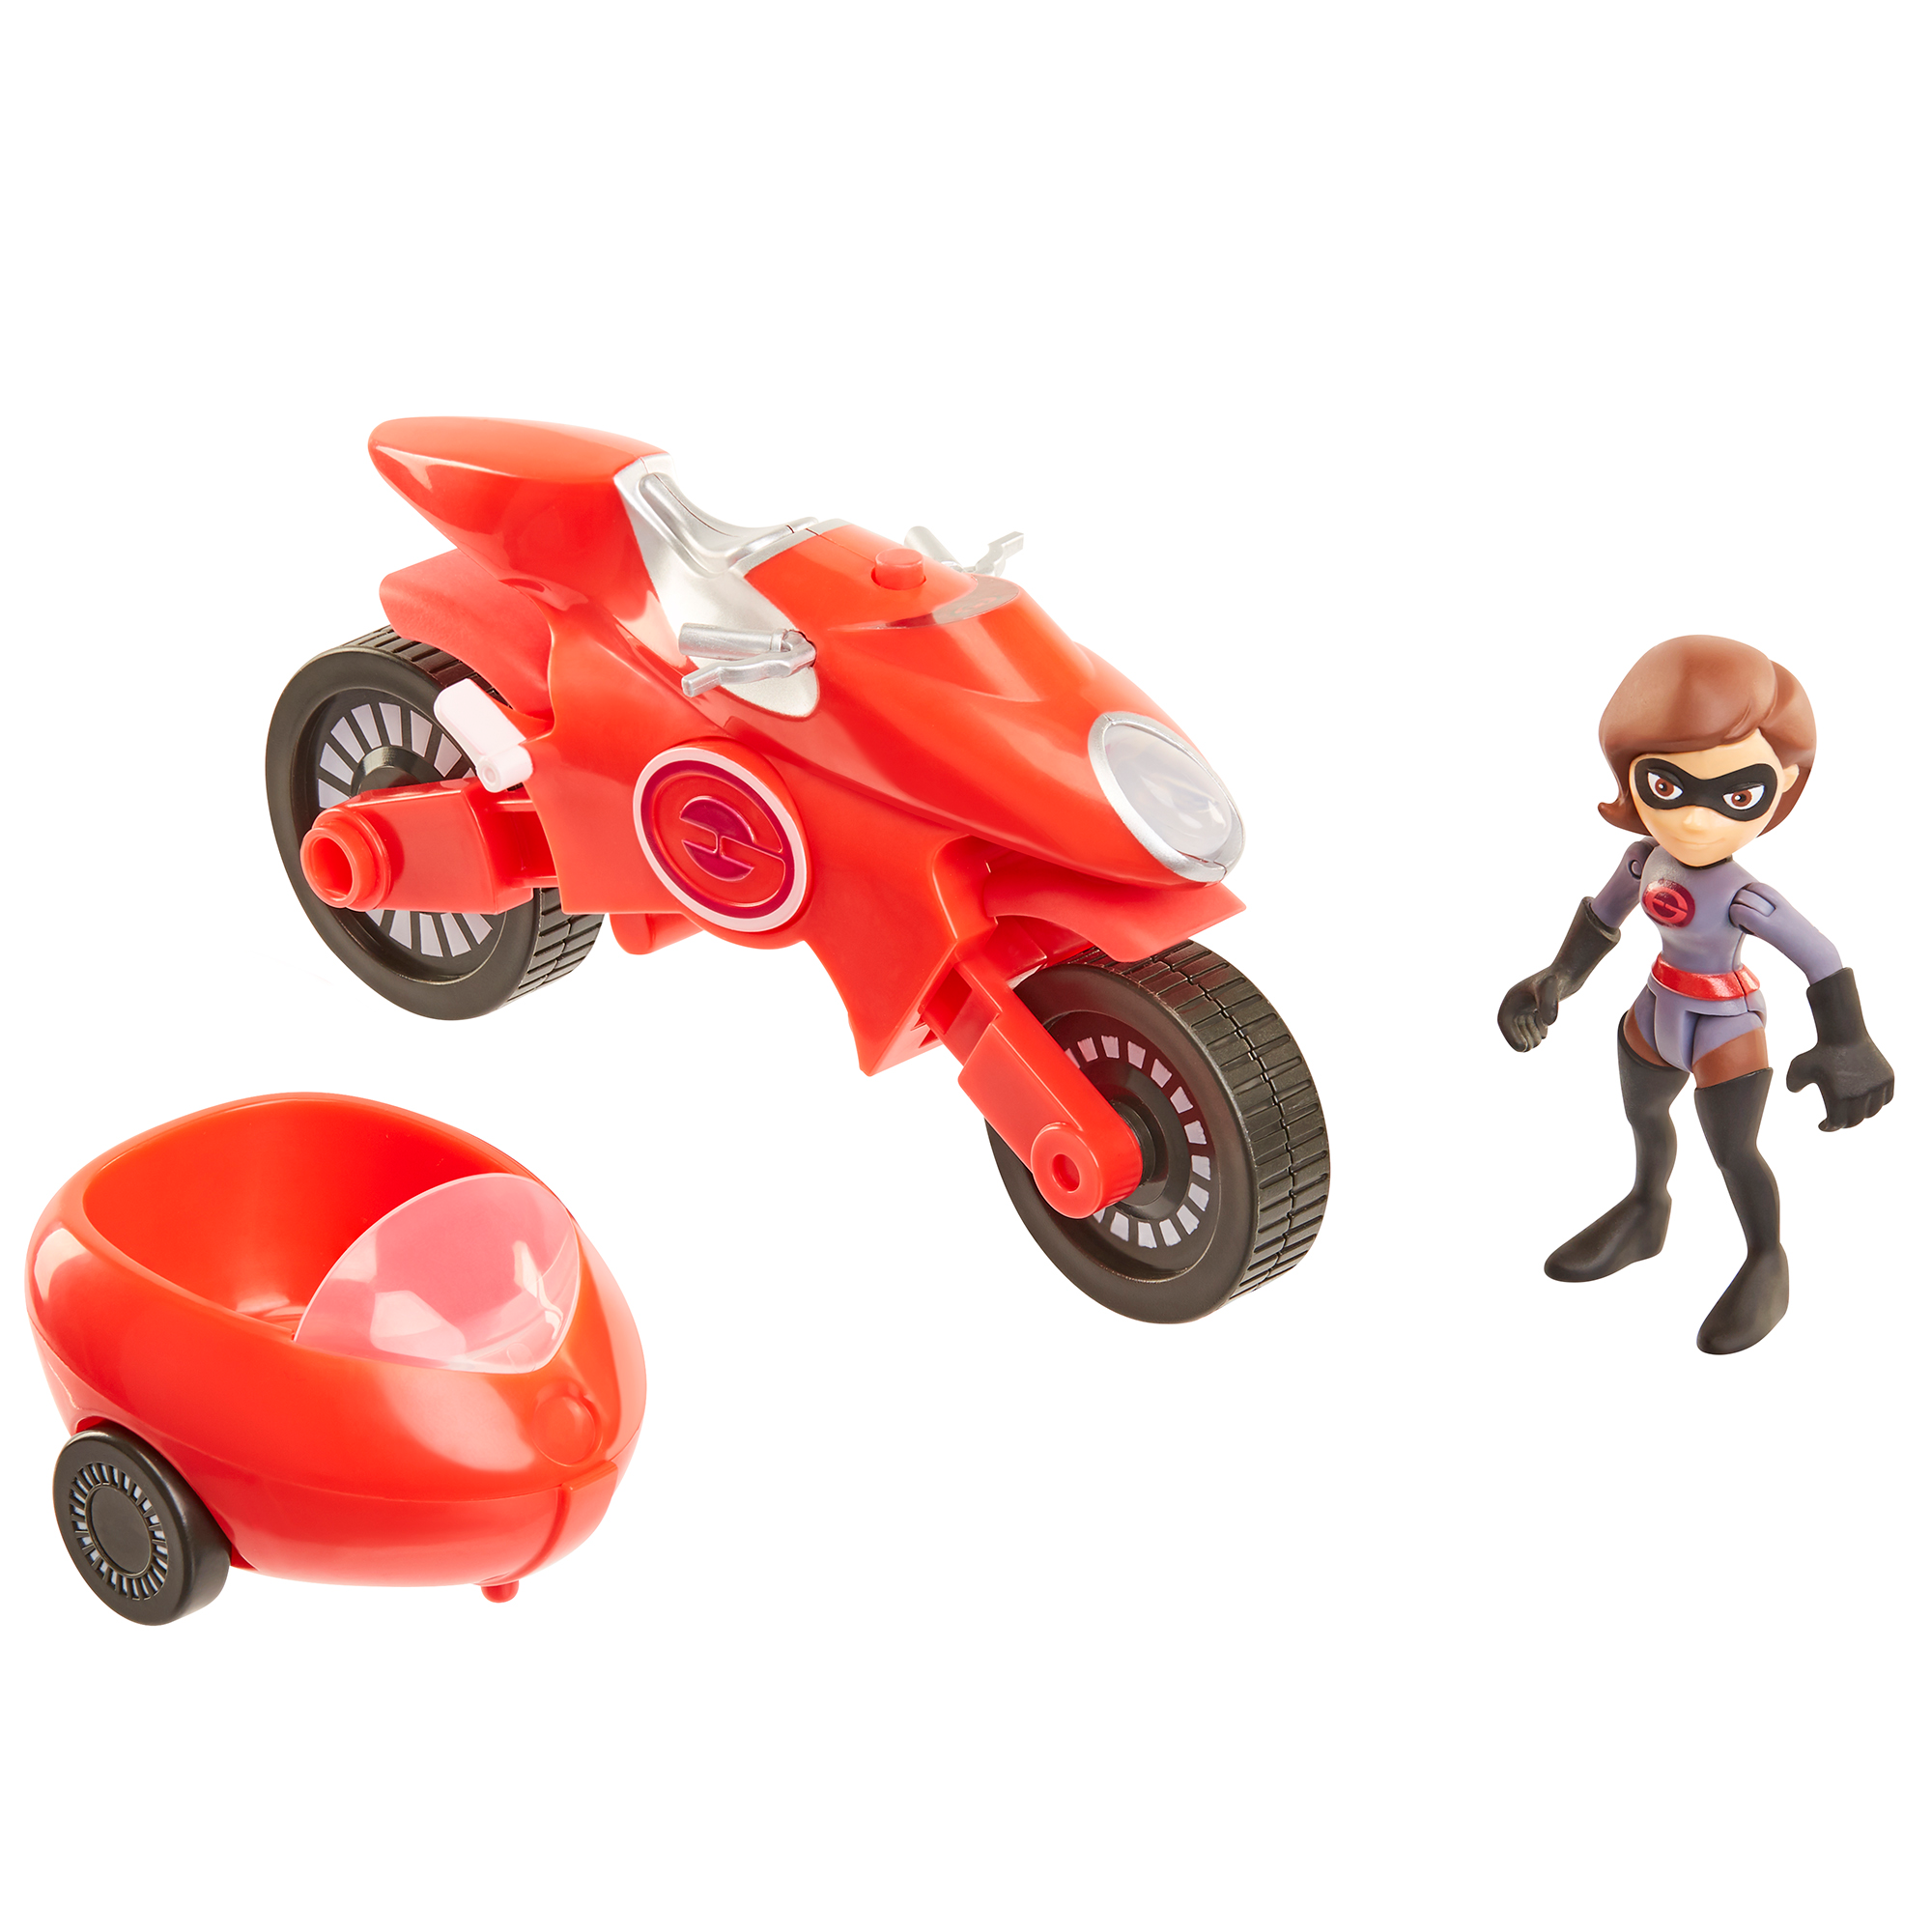 elastigirl motorcycle toy target